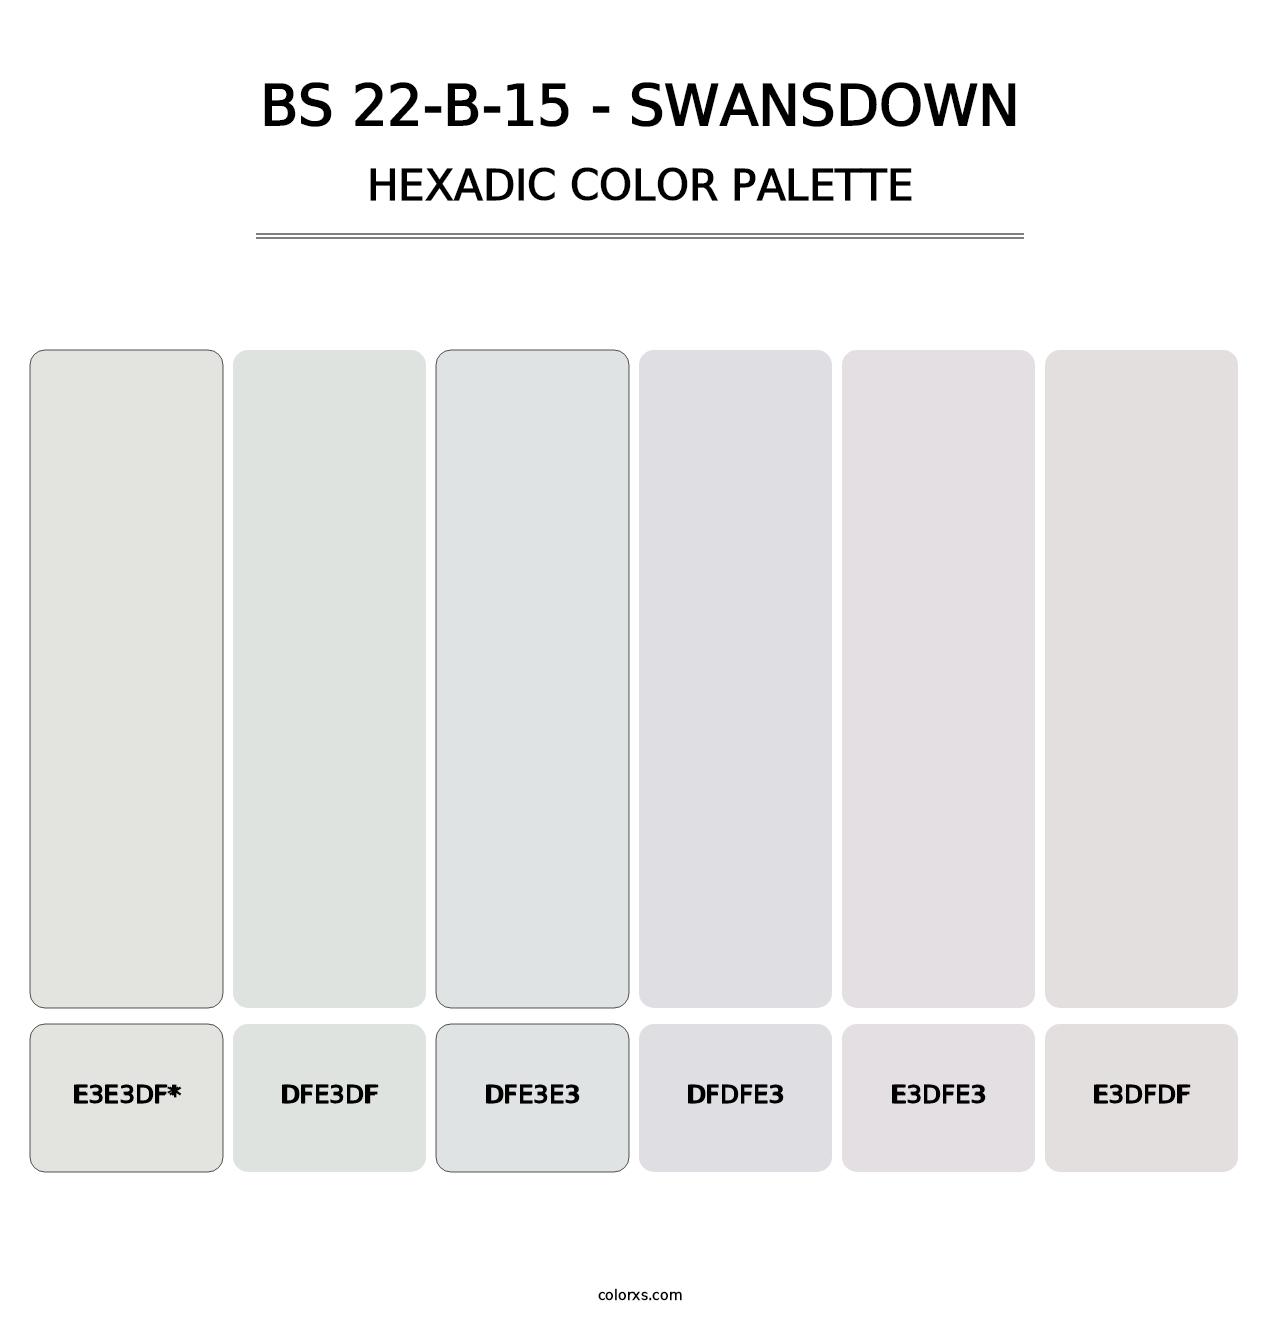 BS 22-B-15 - Swansdown - Hexadic Color Palette